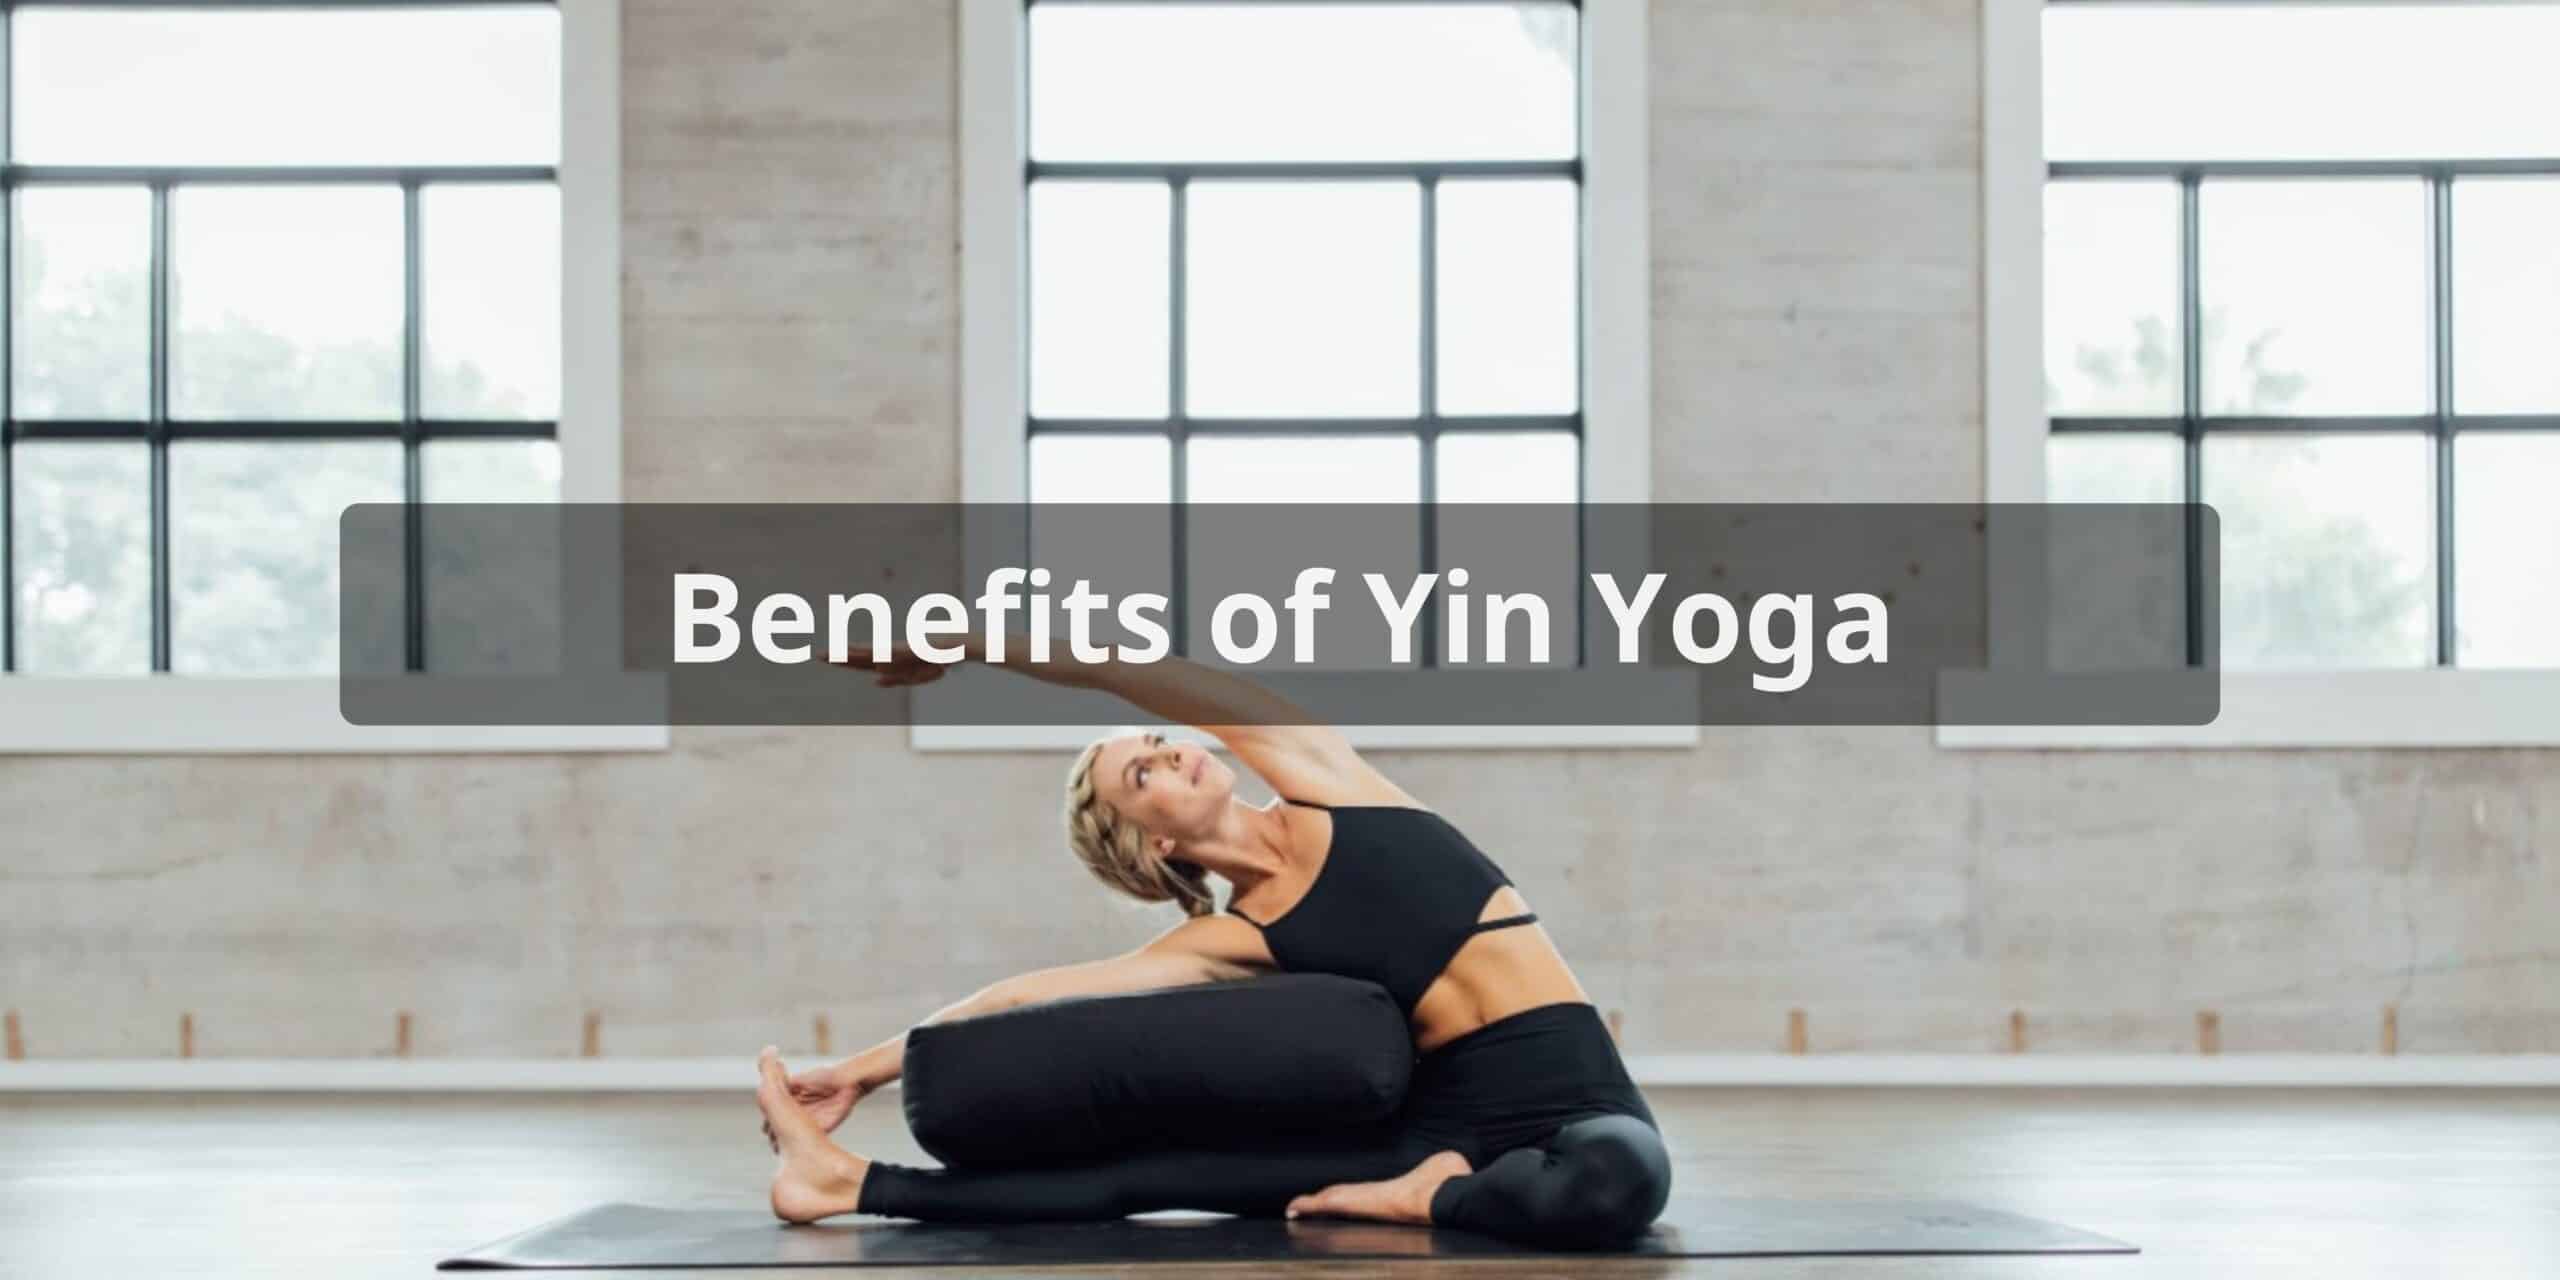 Benefits of Yin Yoga